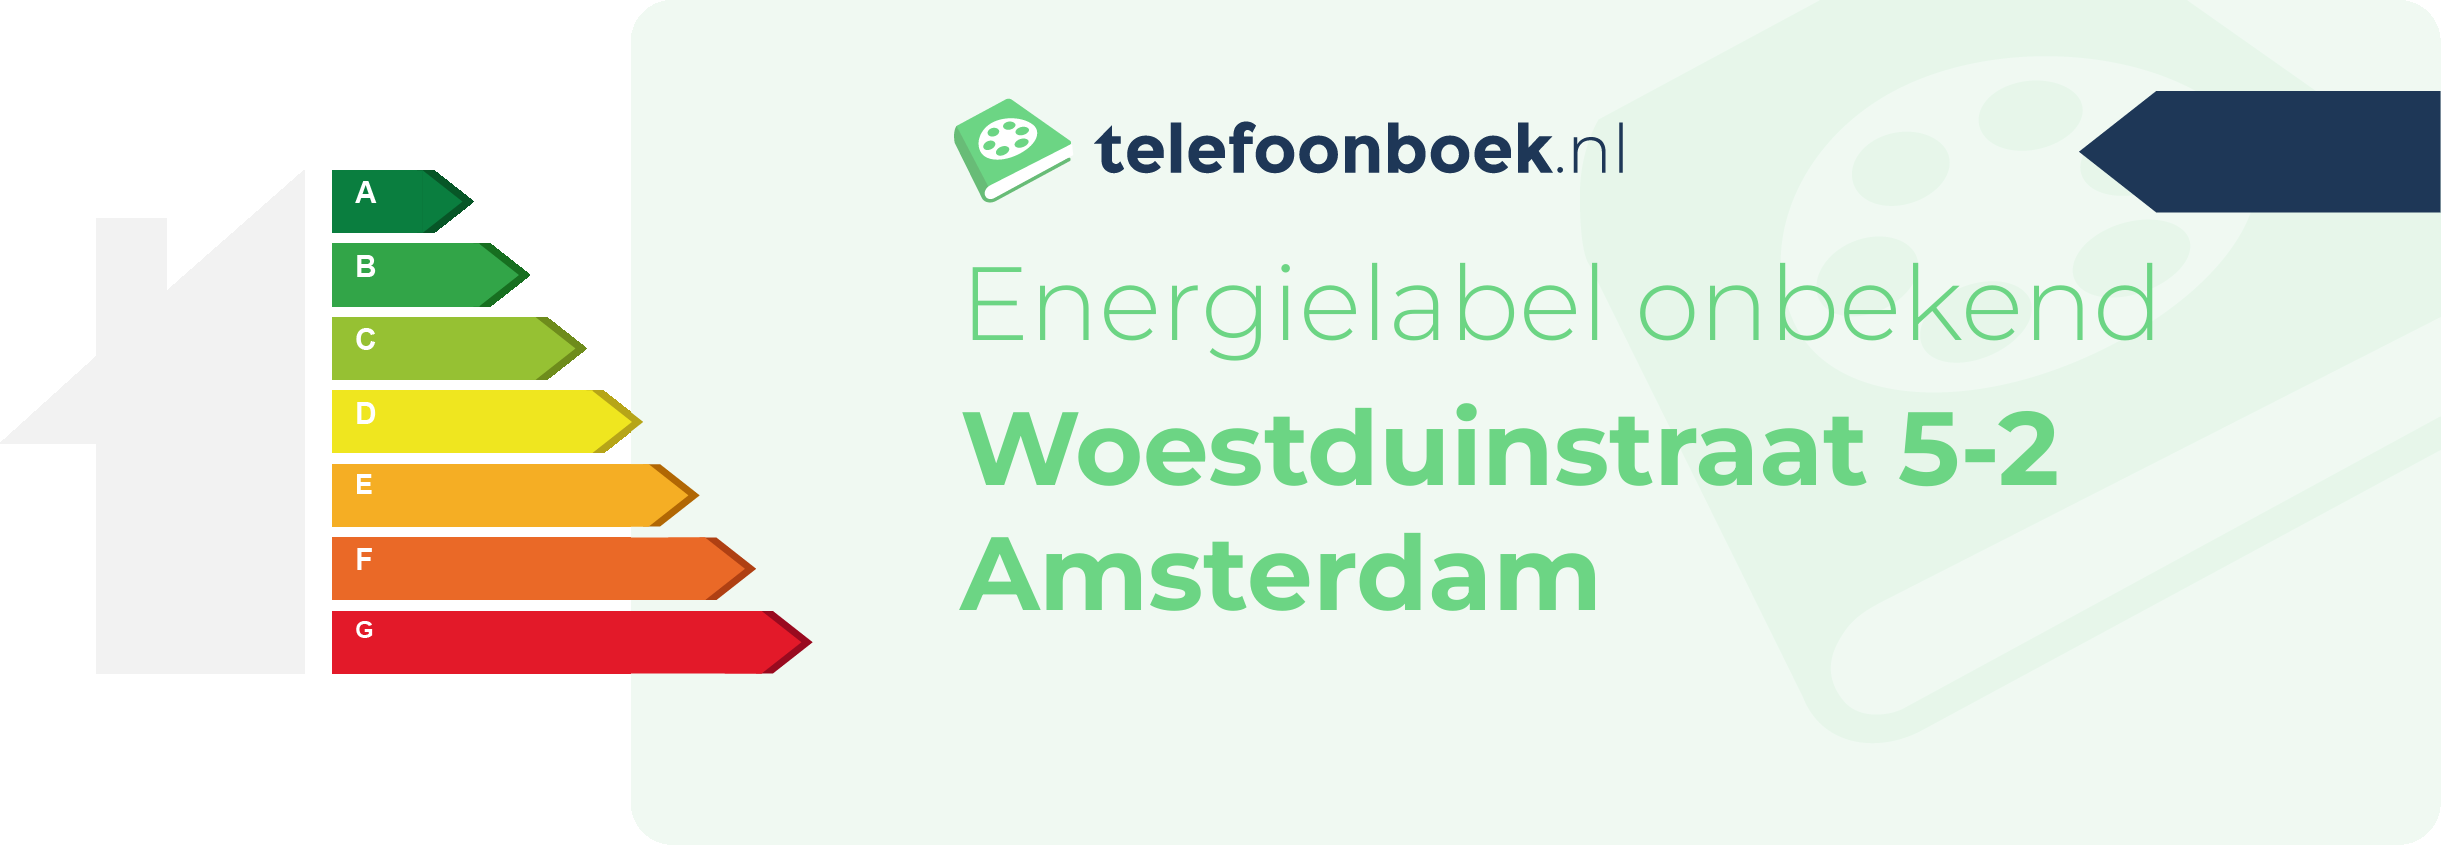 Energielabel Woestduinstraat 5-2 Amsterdam